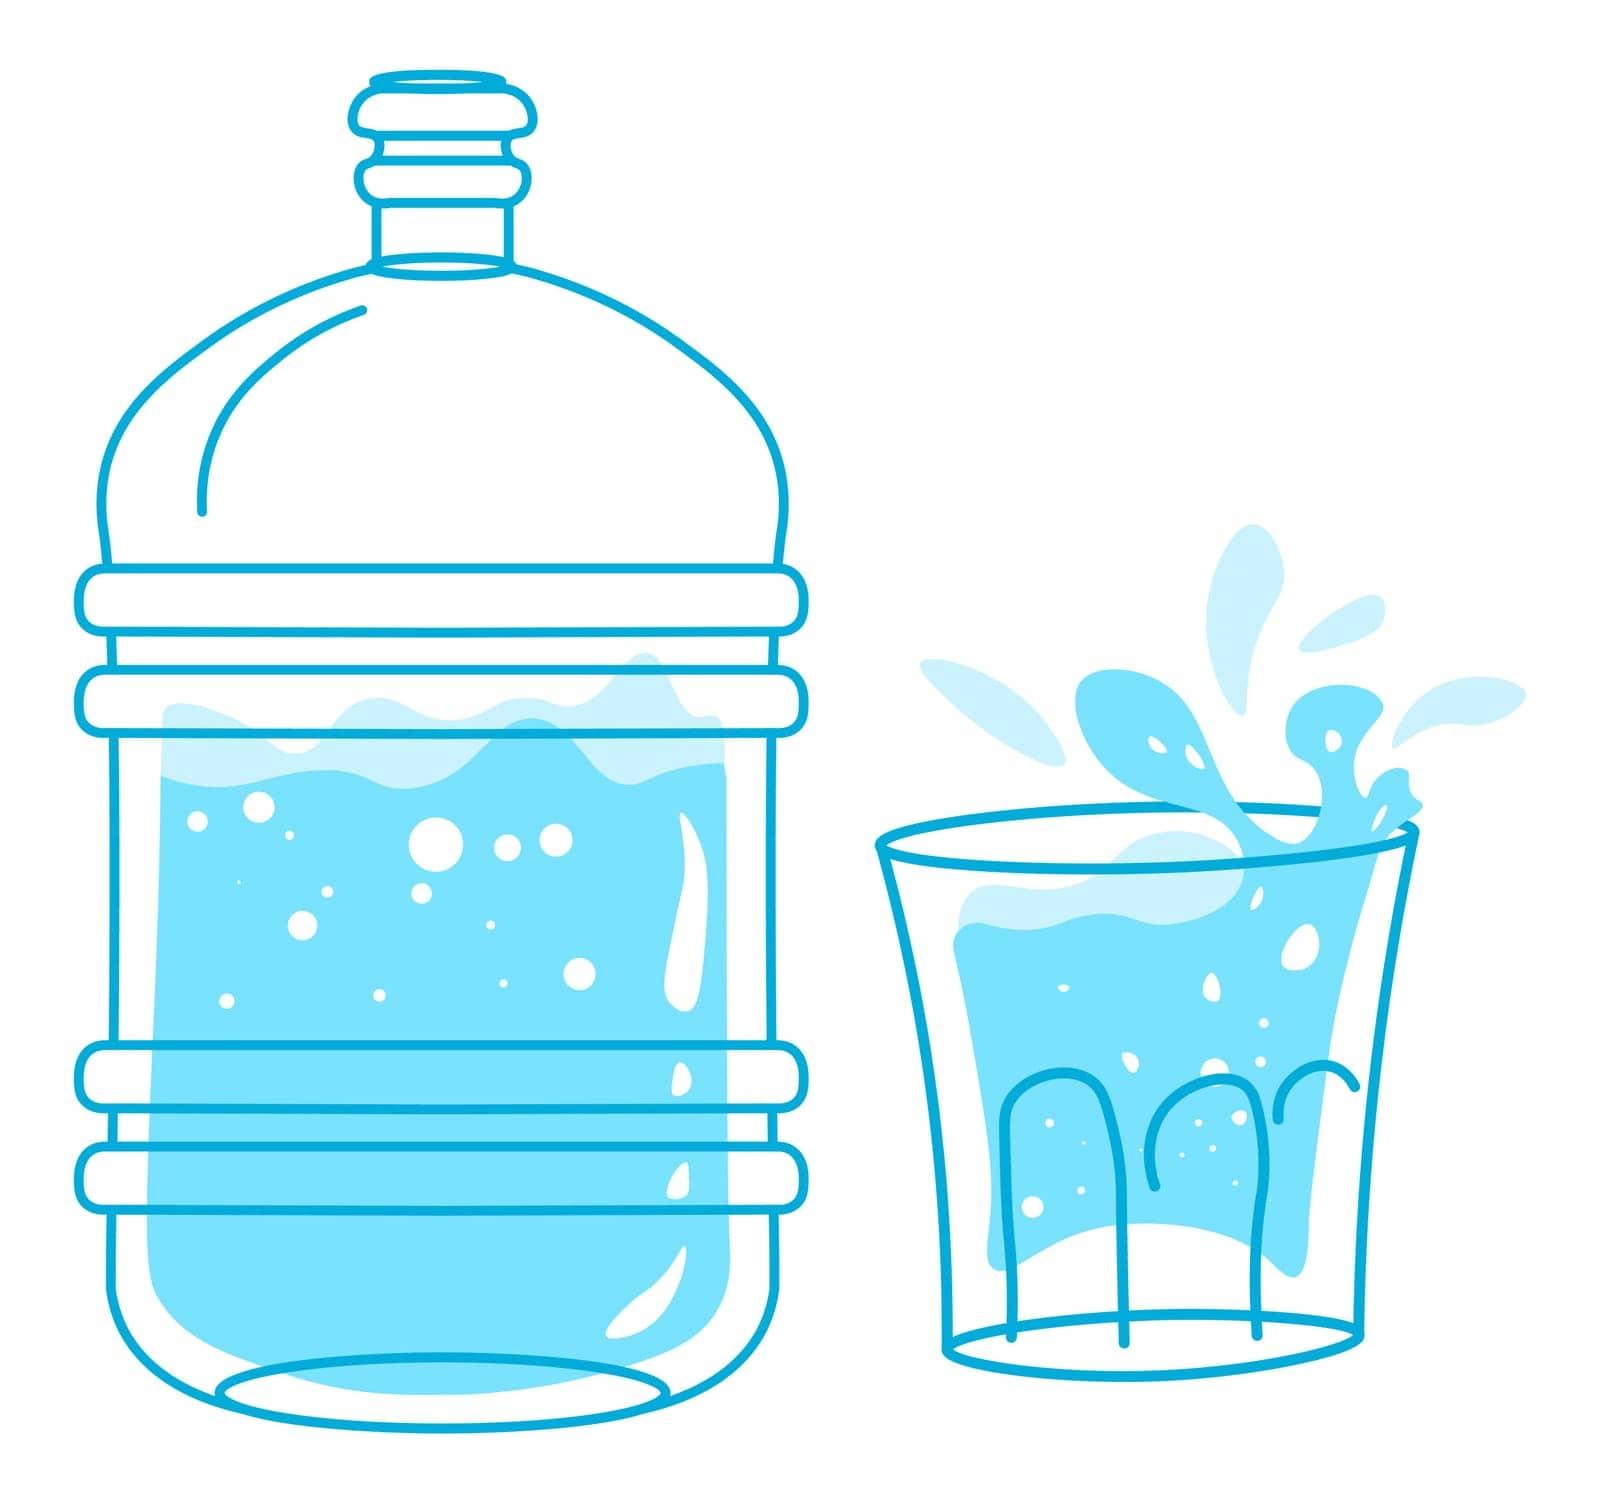 Clean purified water in bottle, drink or beverage by Sonulkaster